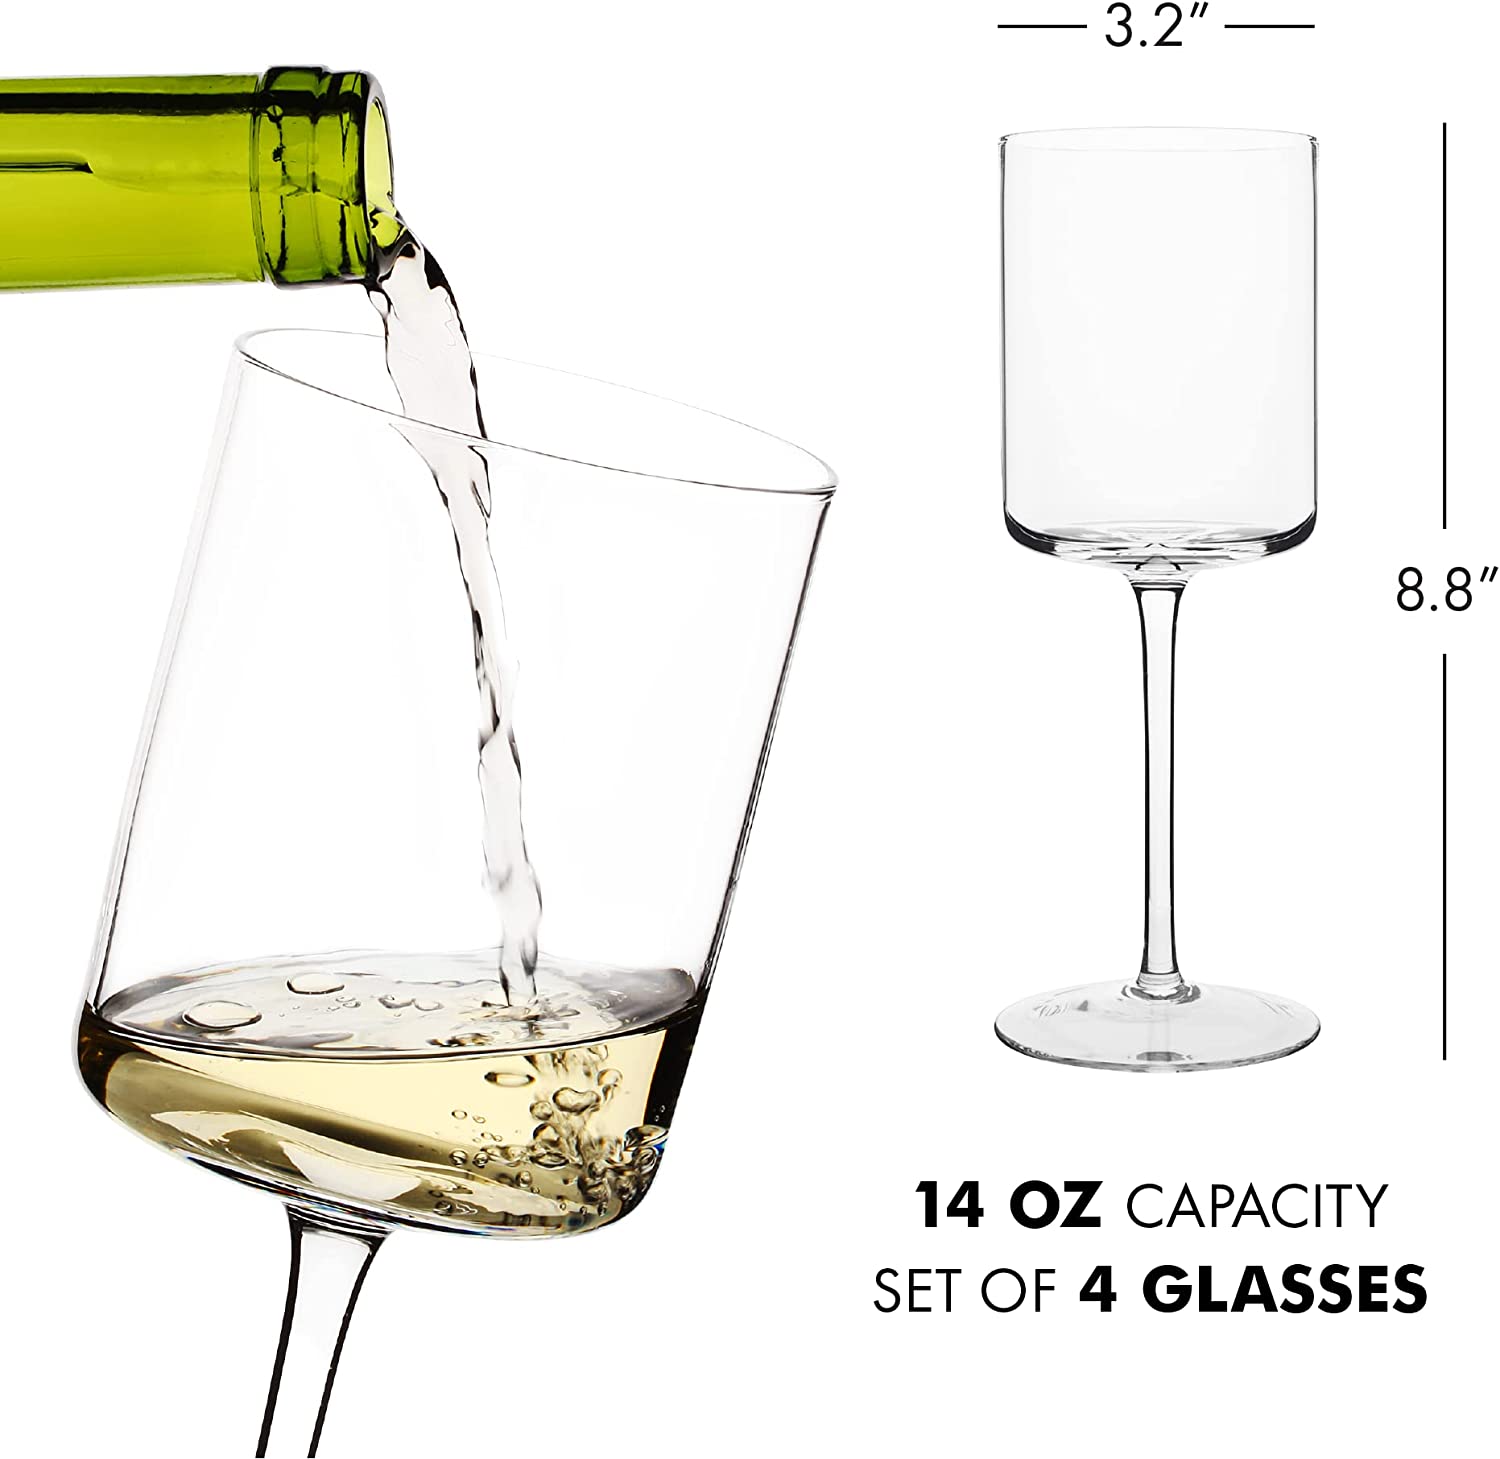 Edge White Wine Glass, Set of 4